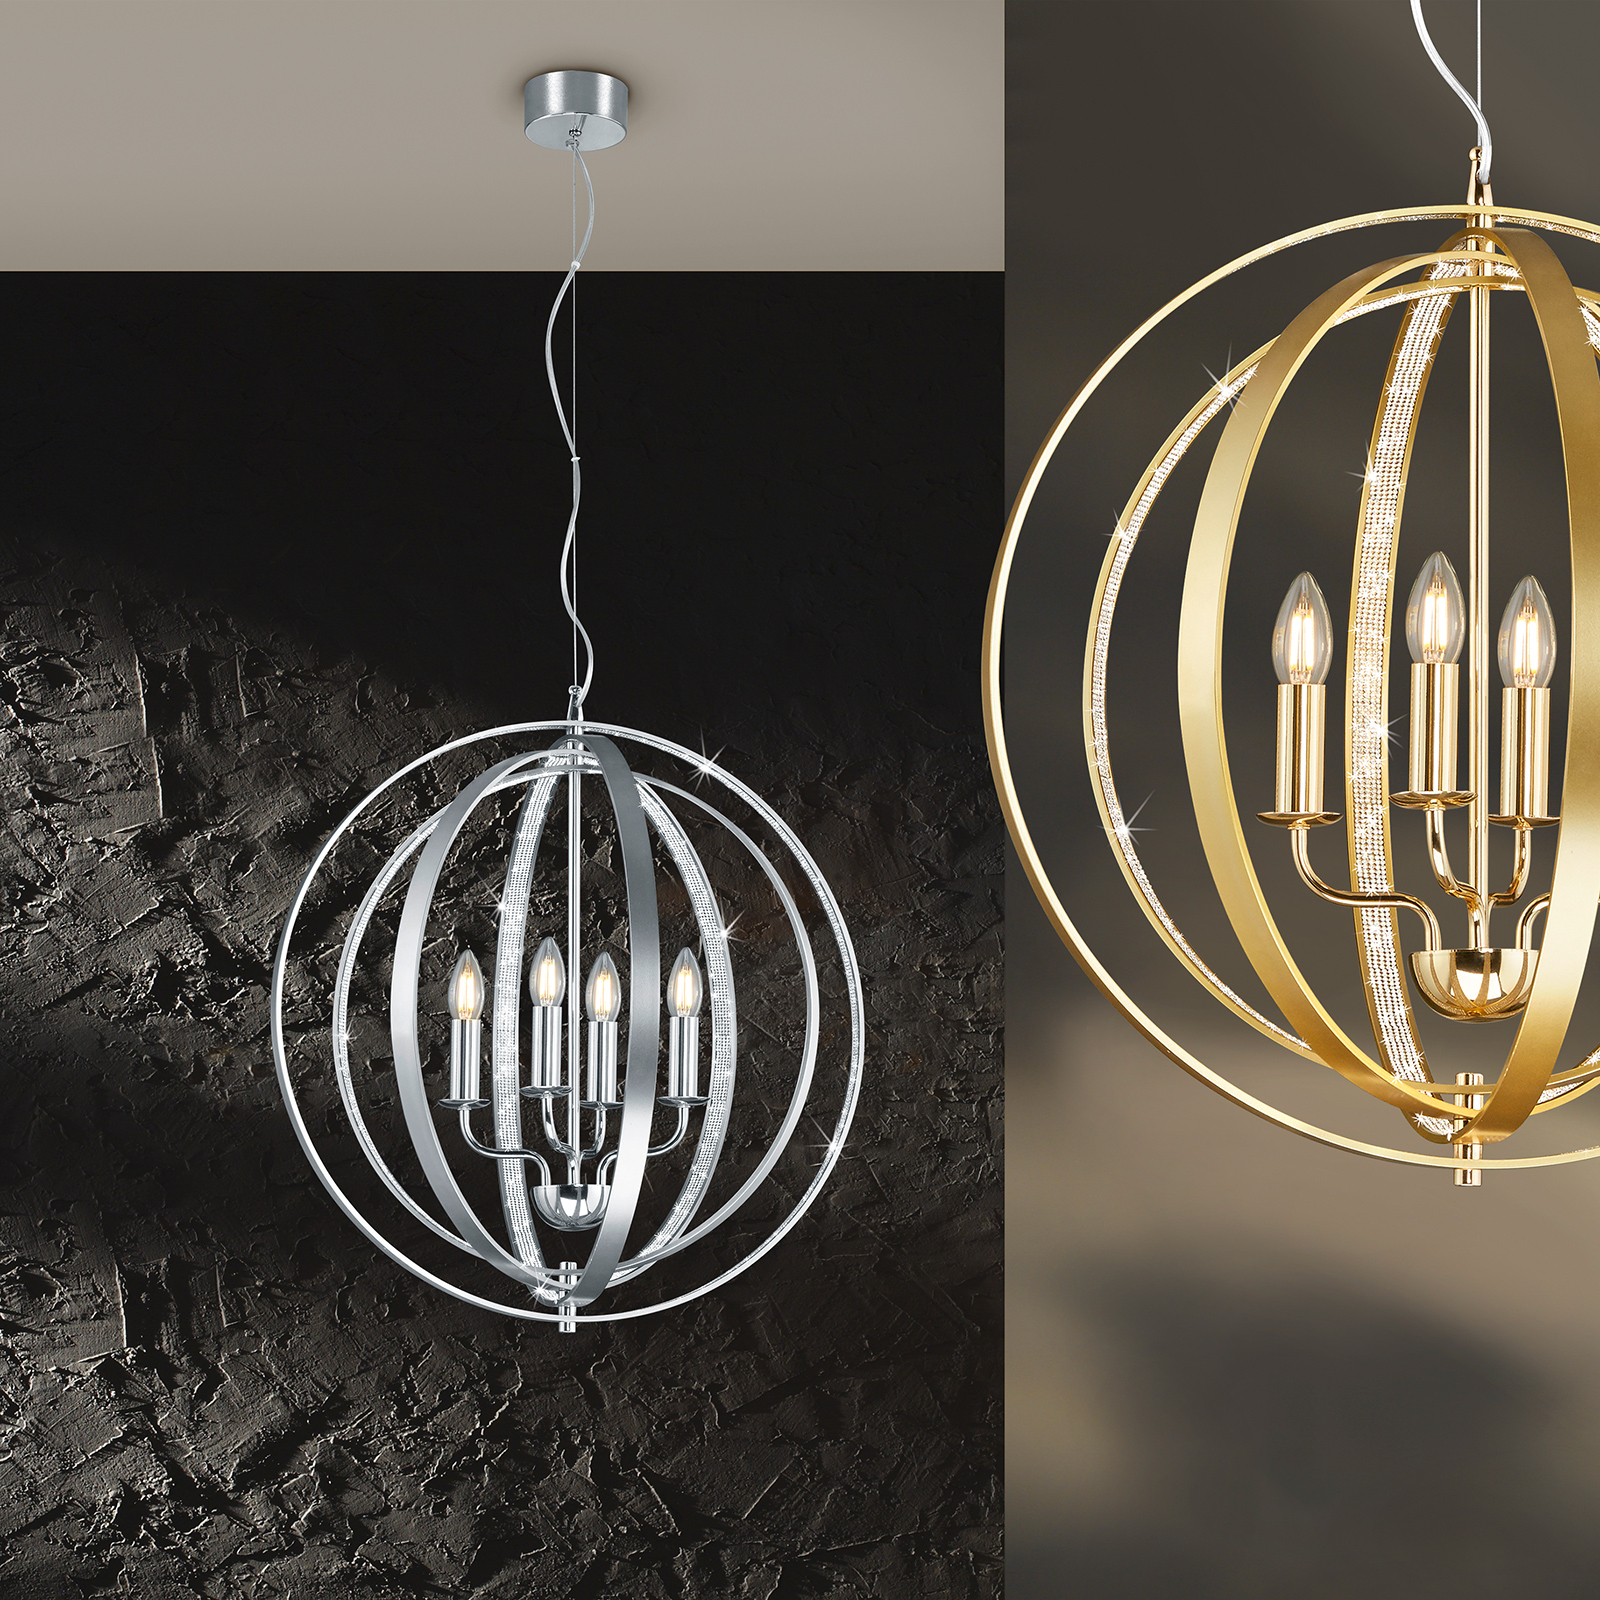 Candela pendant light in brass | Lights.co.uk